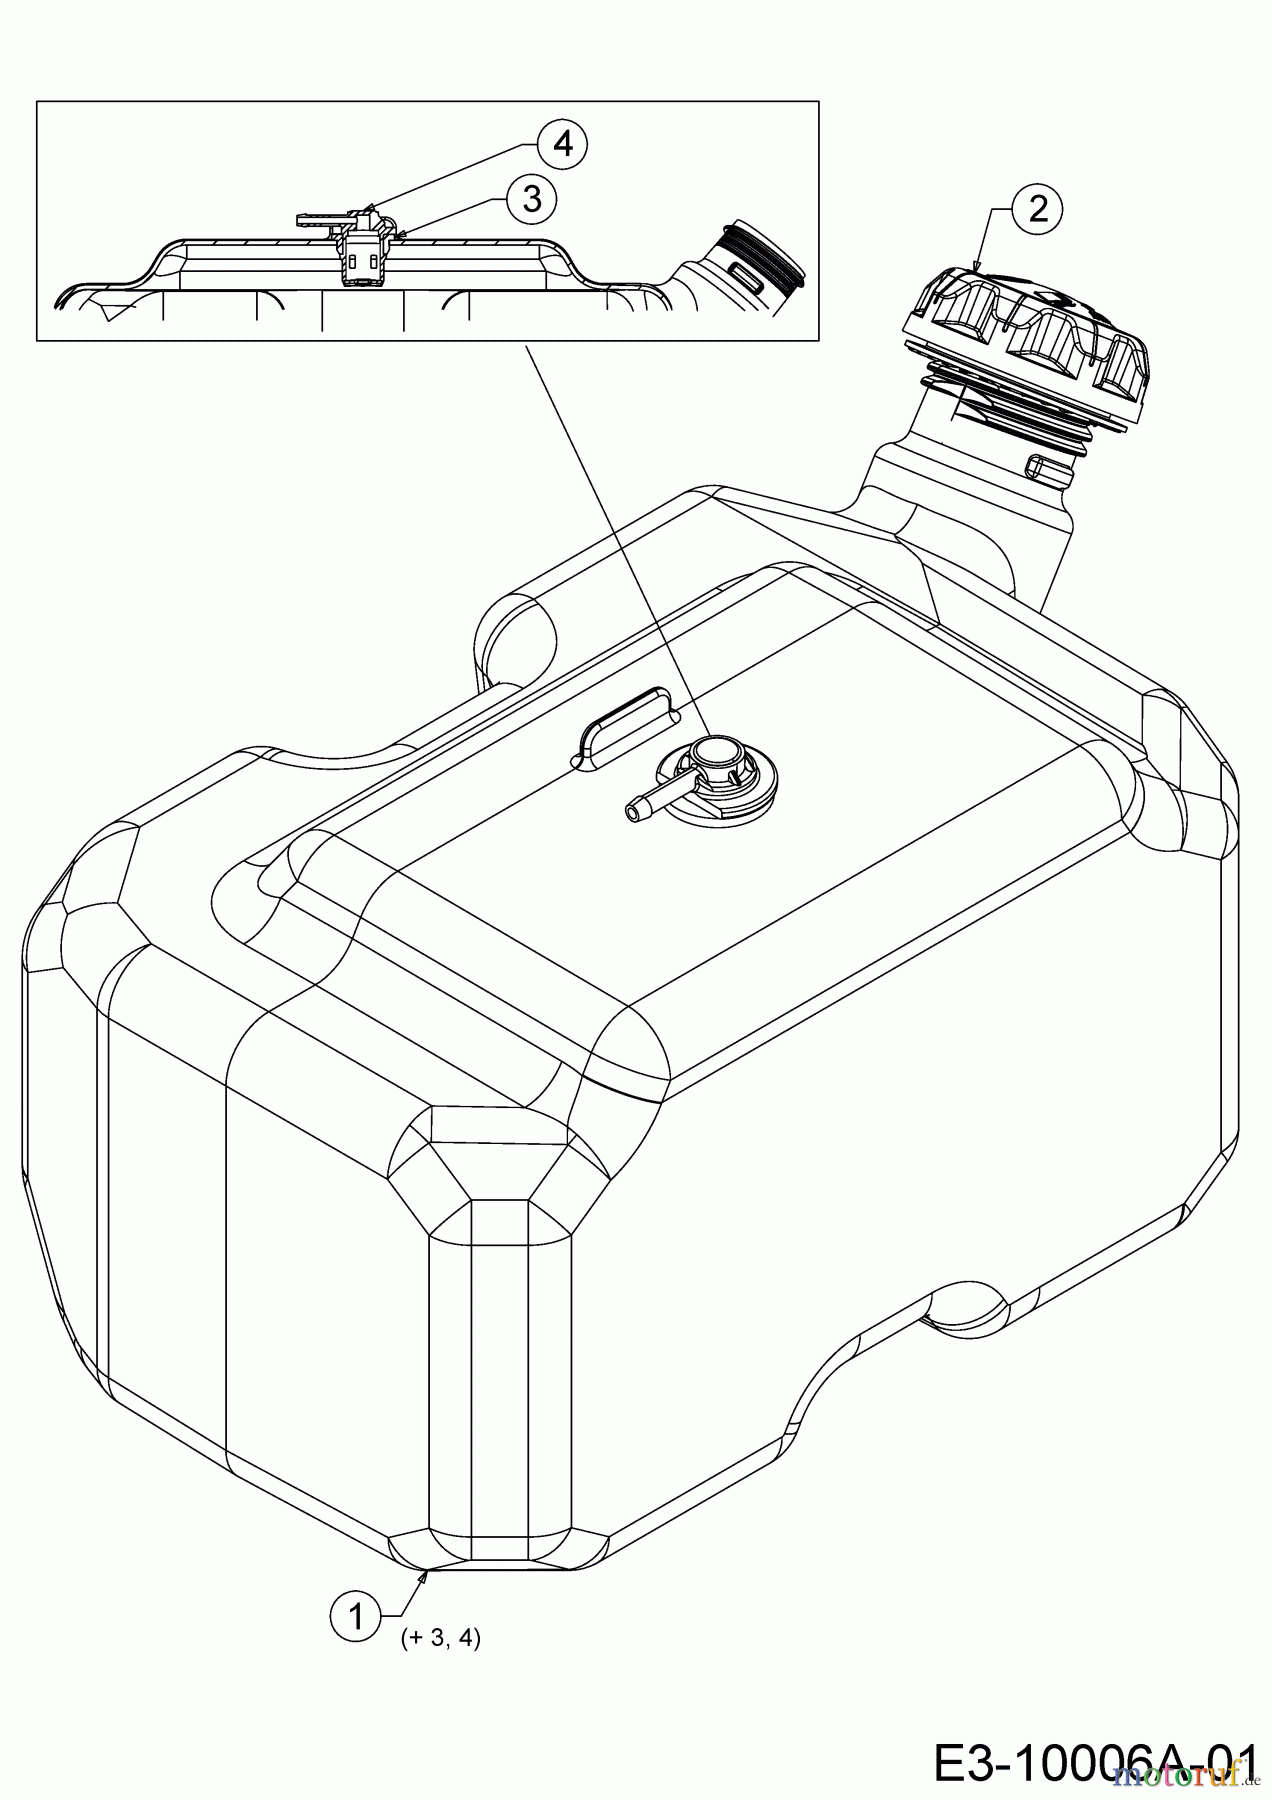  WOLF-Garten Expert Rasentraktoren 95.165 H 13ADA1VB650  (2017) Tank